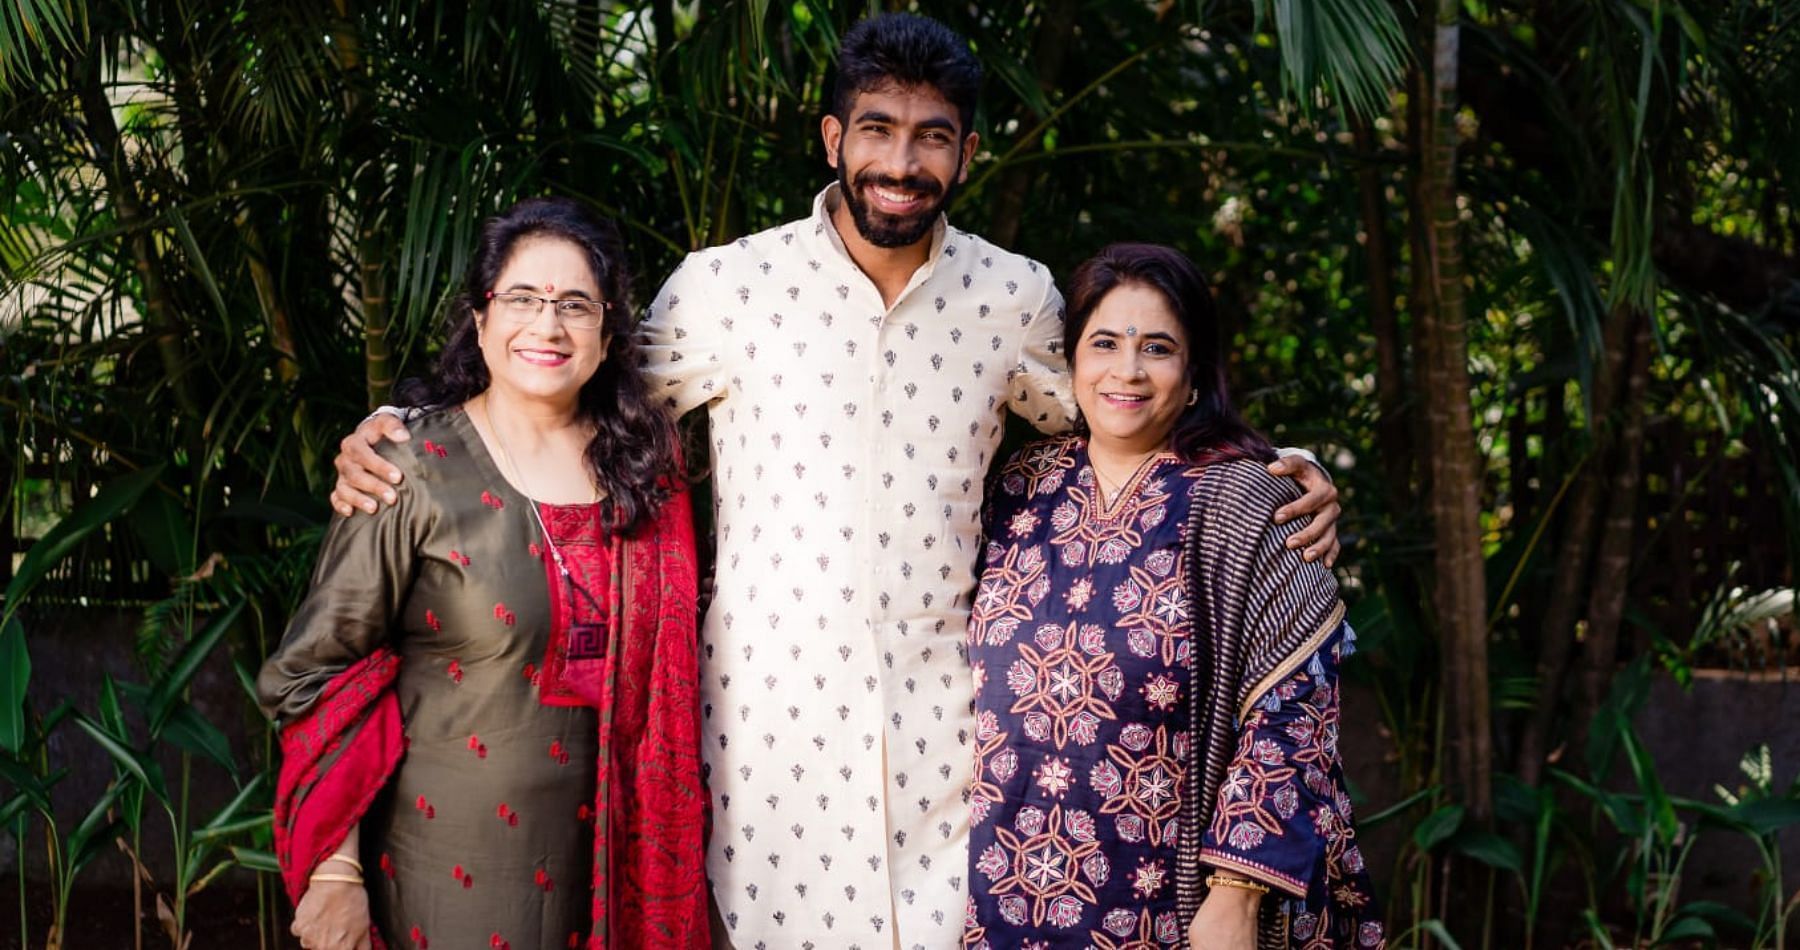 जसप्रीत बुमराह ने अपनी माँ और मौसी को दी जन्मदिन की बधाई (PC: Twitter)